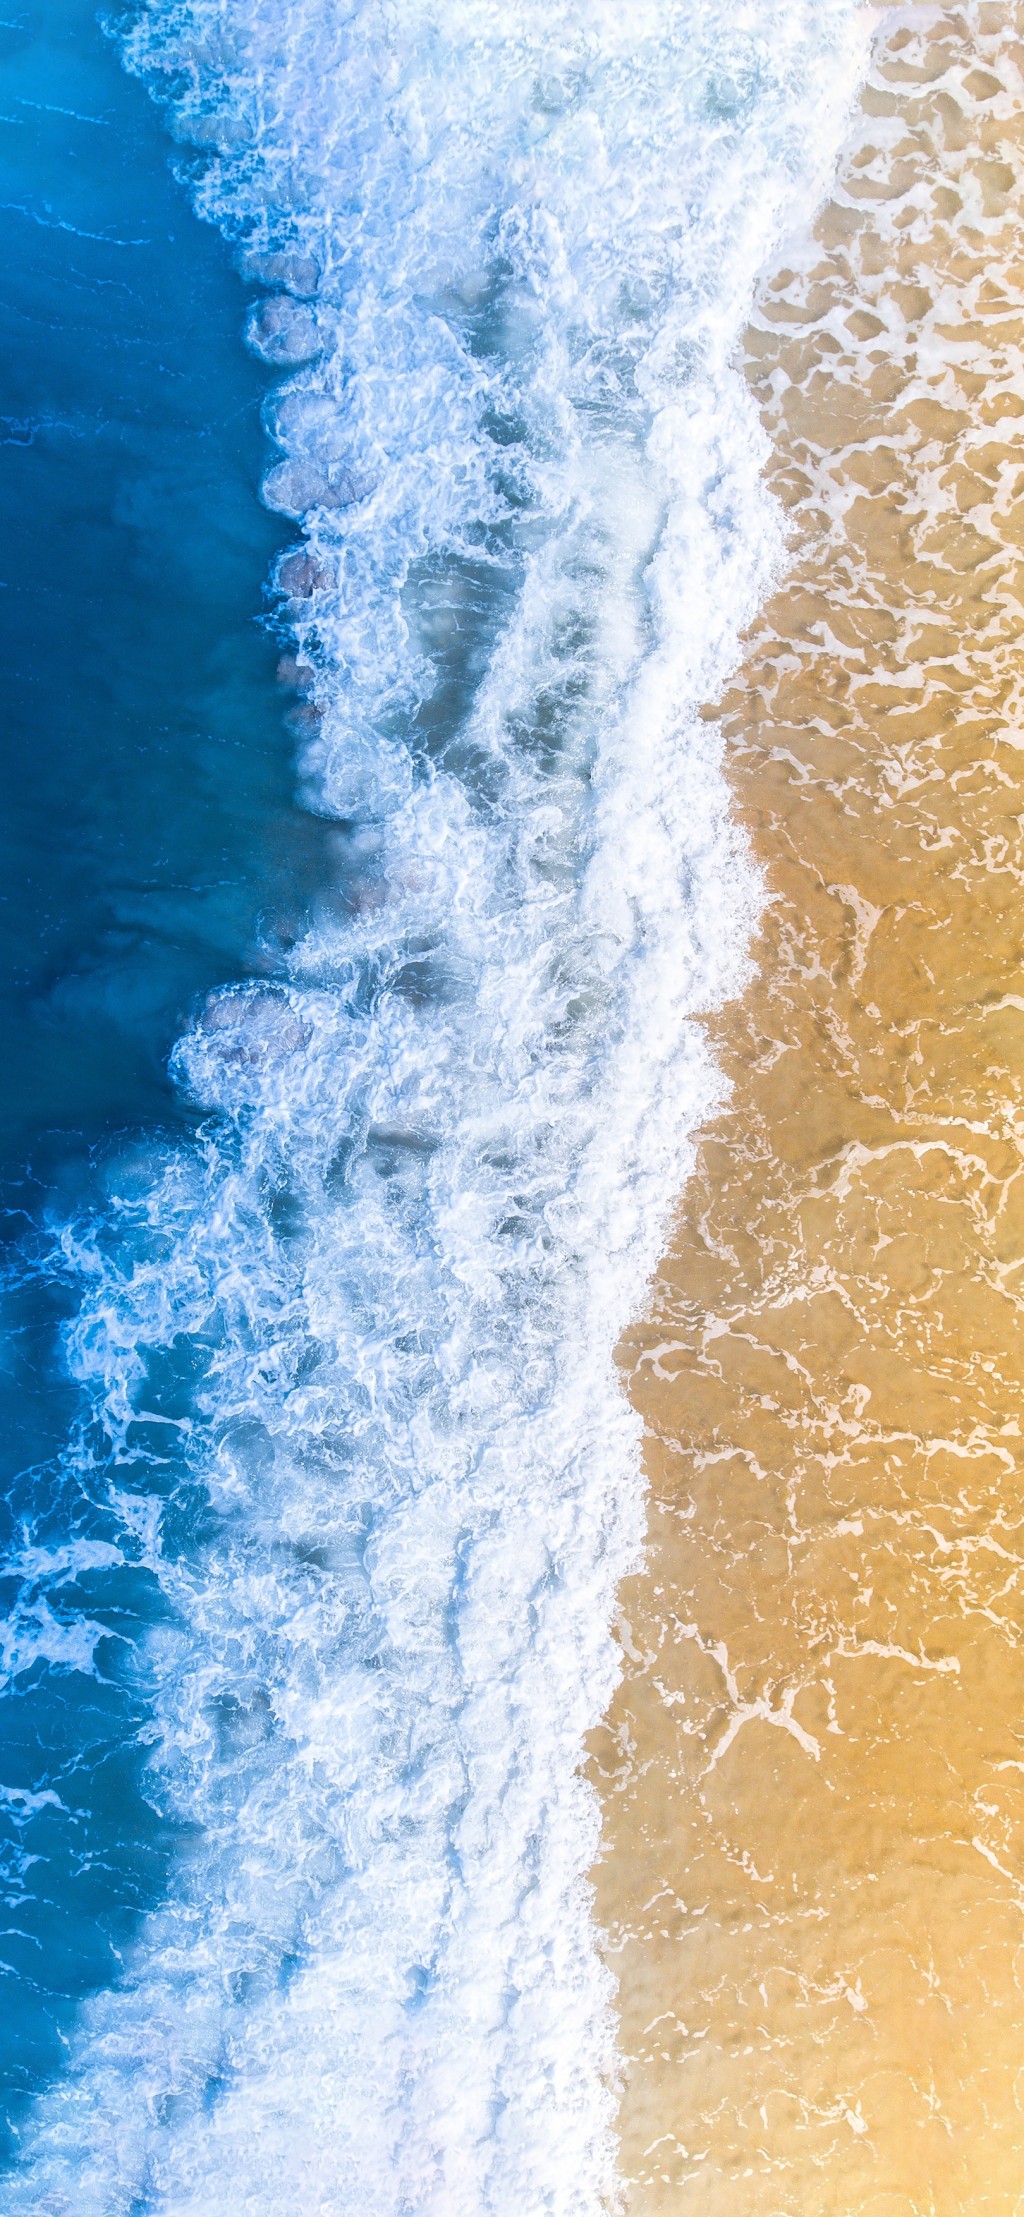 夏日清新海浪风景手机壁纸